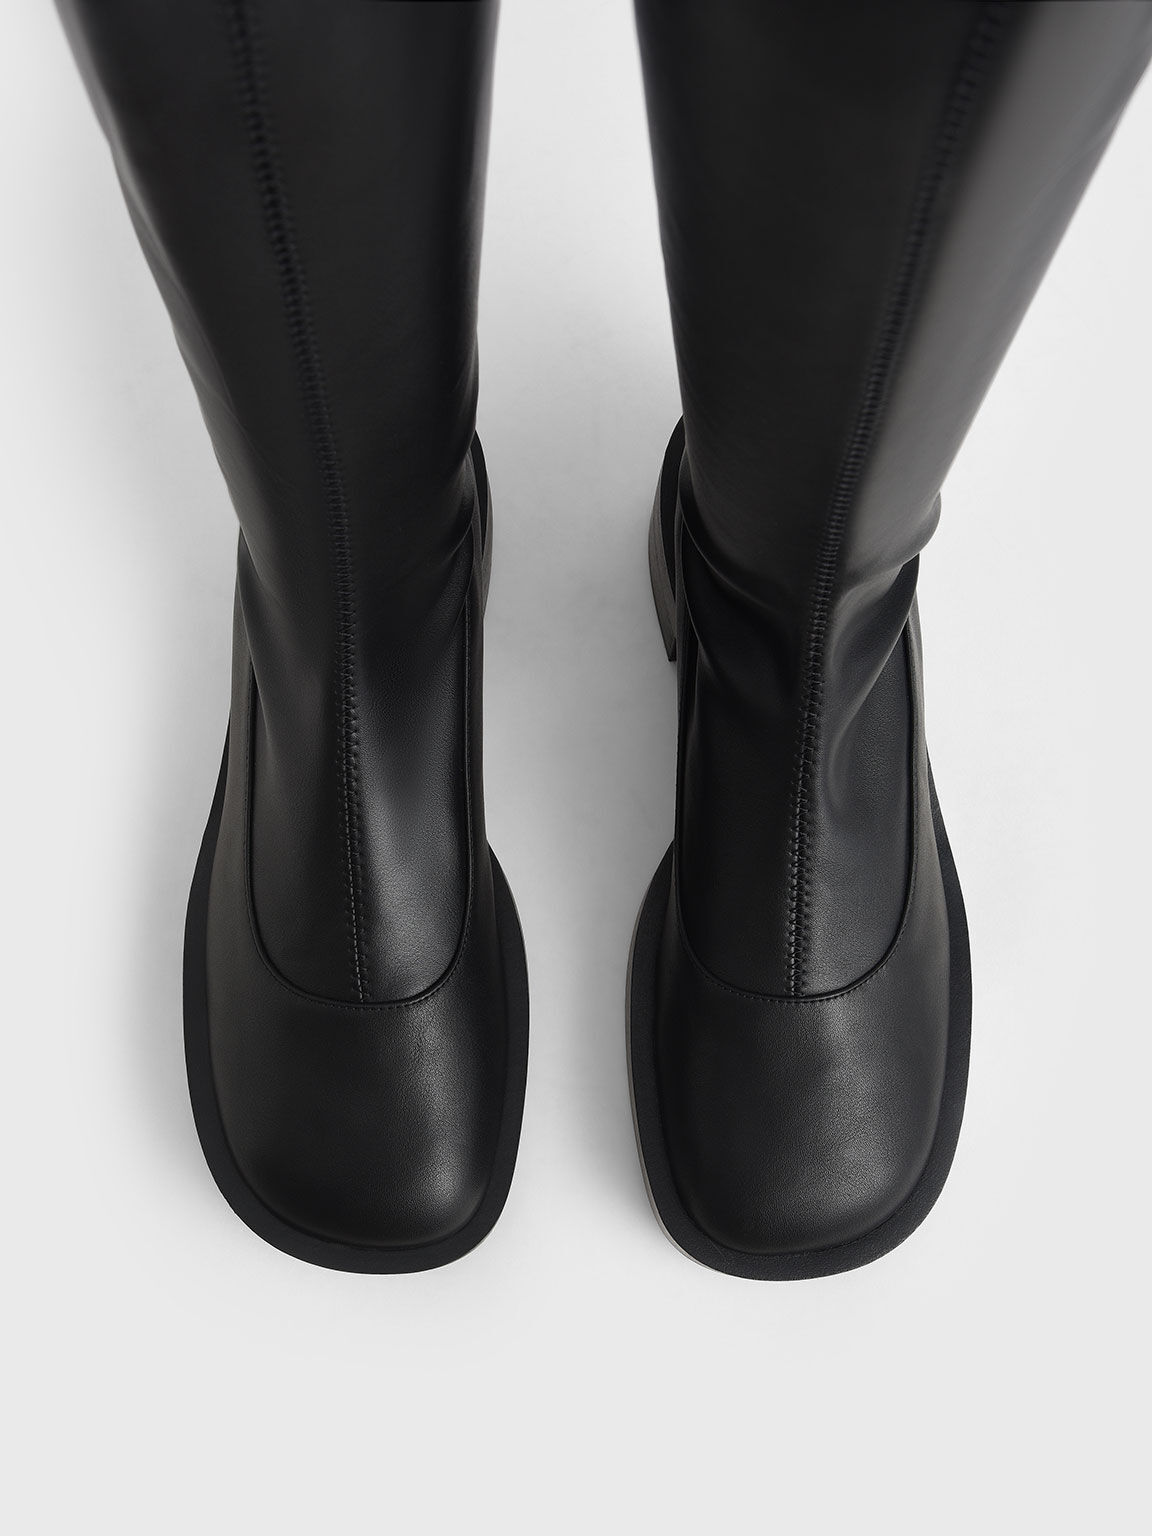 Thigh-High Block Heel Boots, Black, hi-res